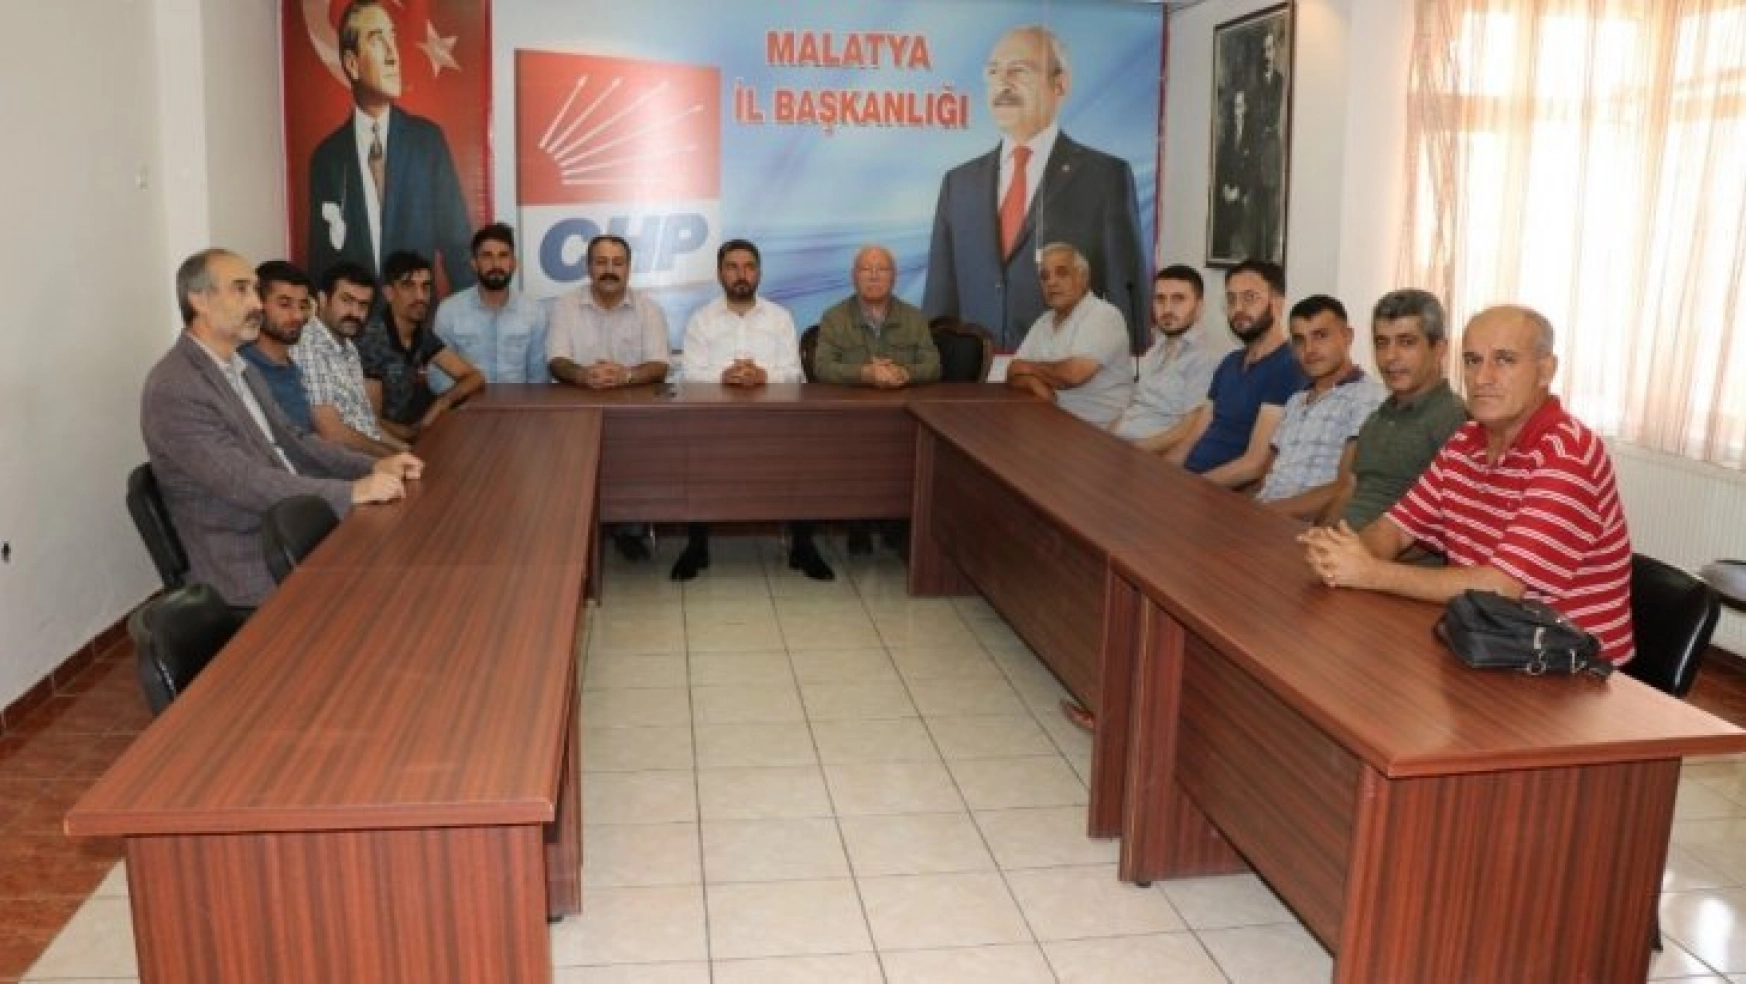 Baskı gördüklerini iddia eden işçiler CHP'den destek istedi